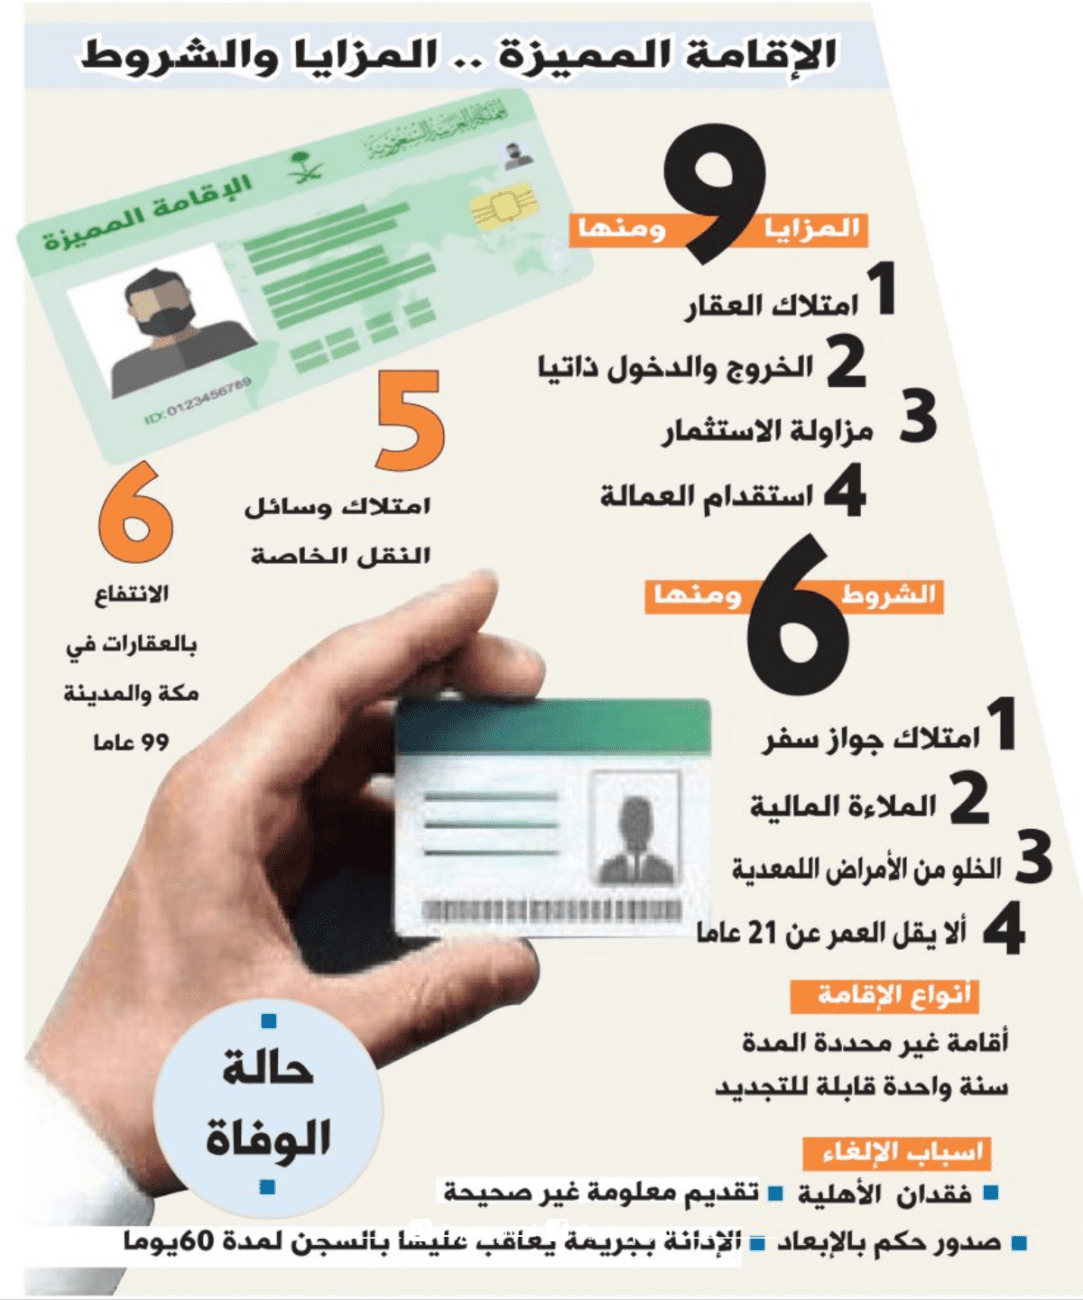 شروط التقديم على الإقامة الدائمة في السعودية والمزايا من الحصول عليها - انفوجراف مصلحة الجوازات